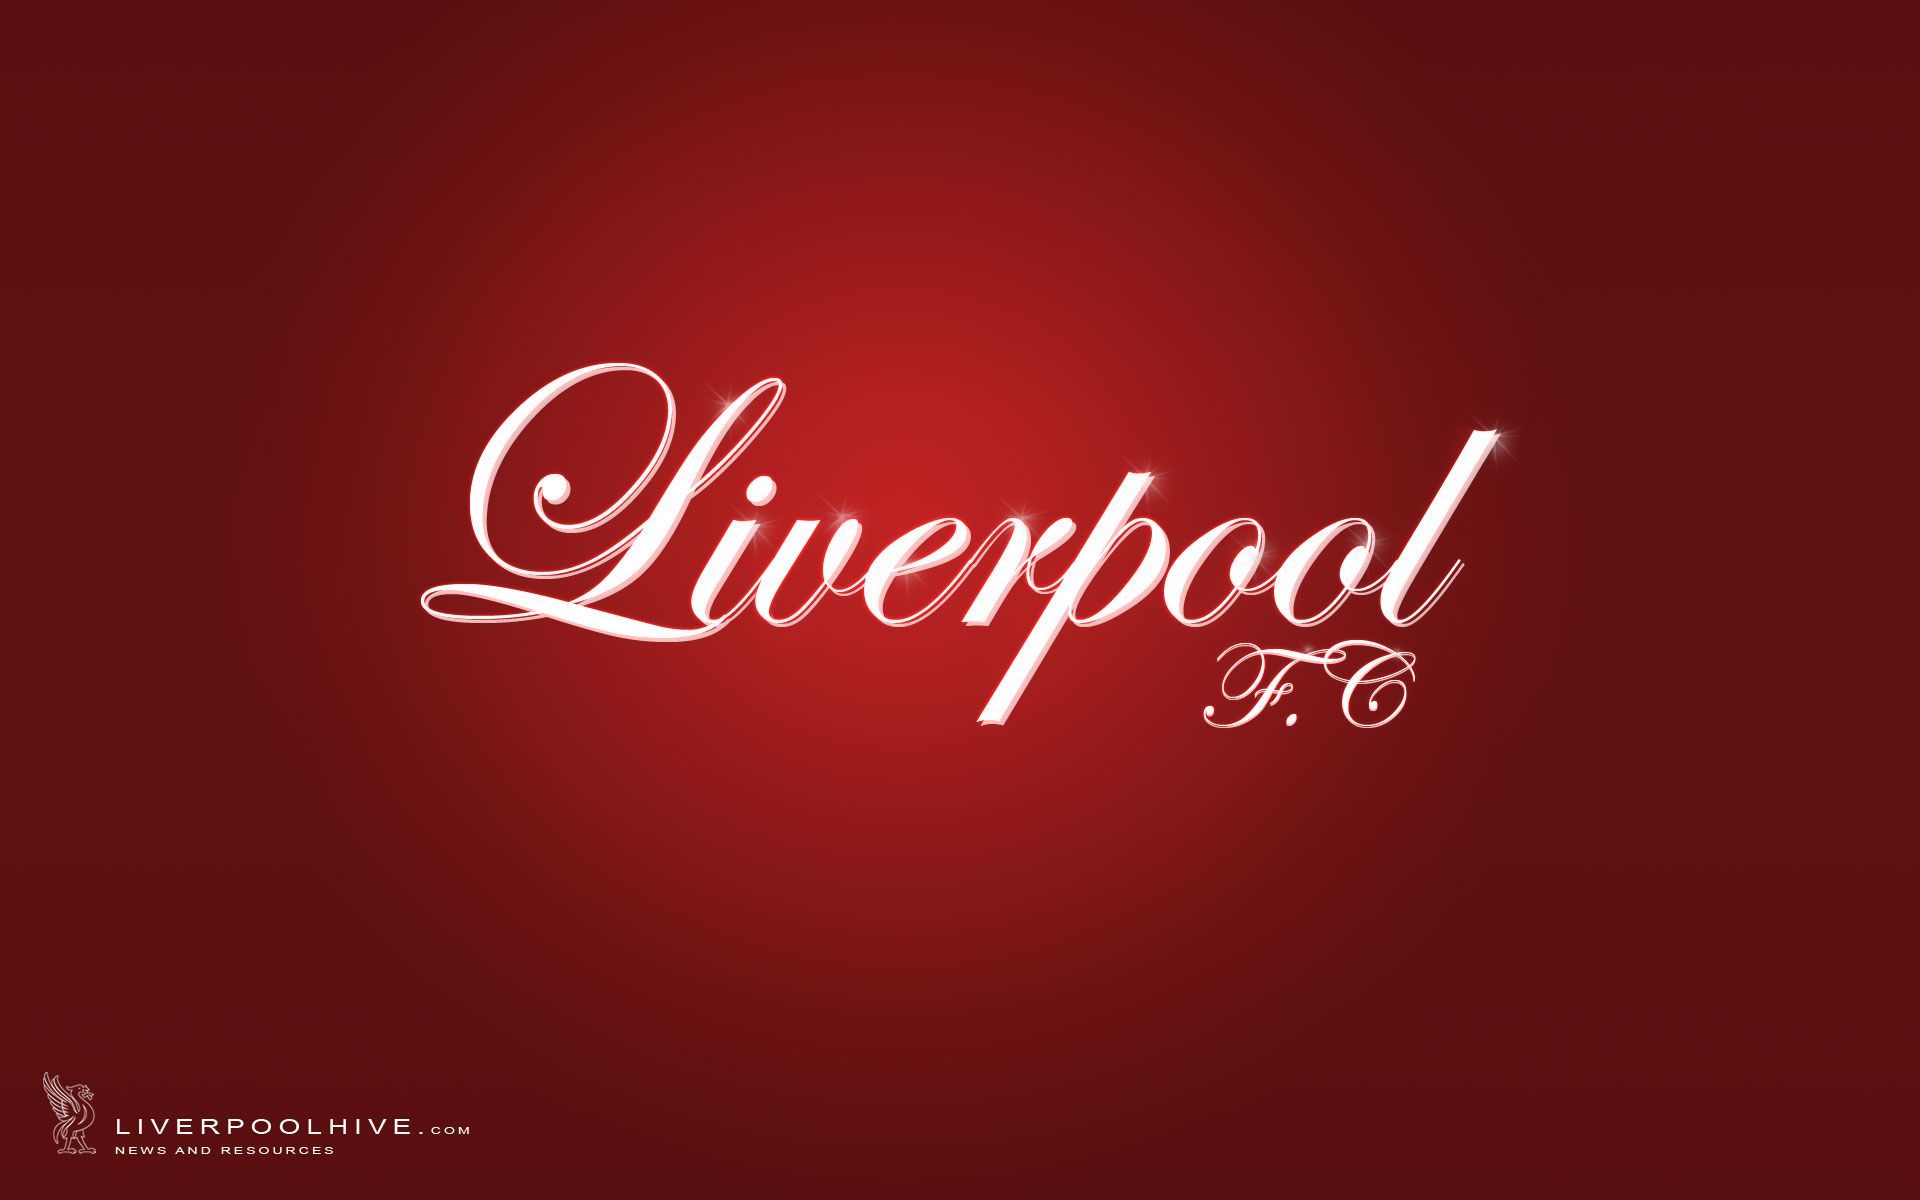 Elegant Liverpool Fc Wallpaper View Hd Liverpool Fc Badge ...